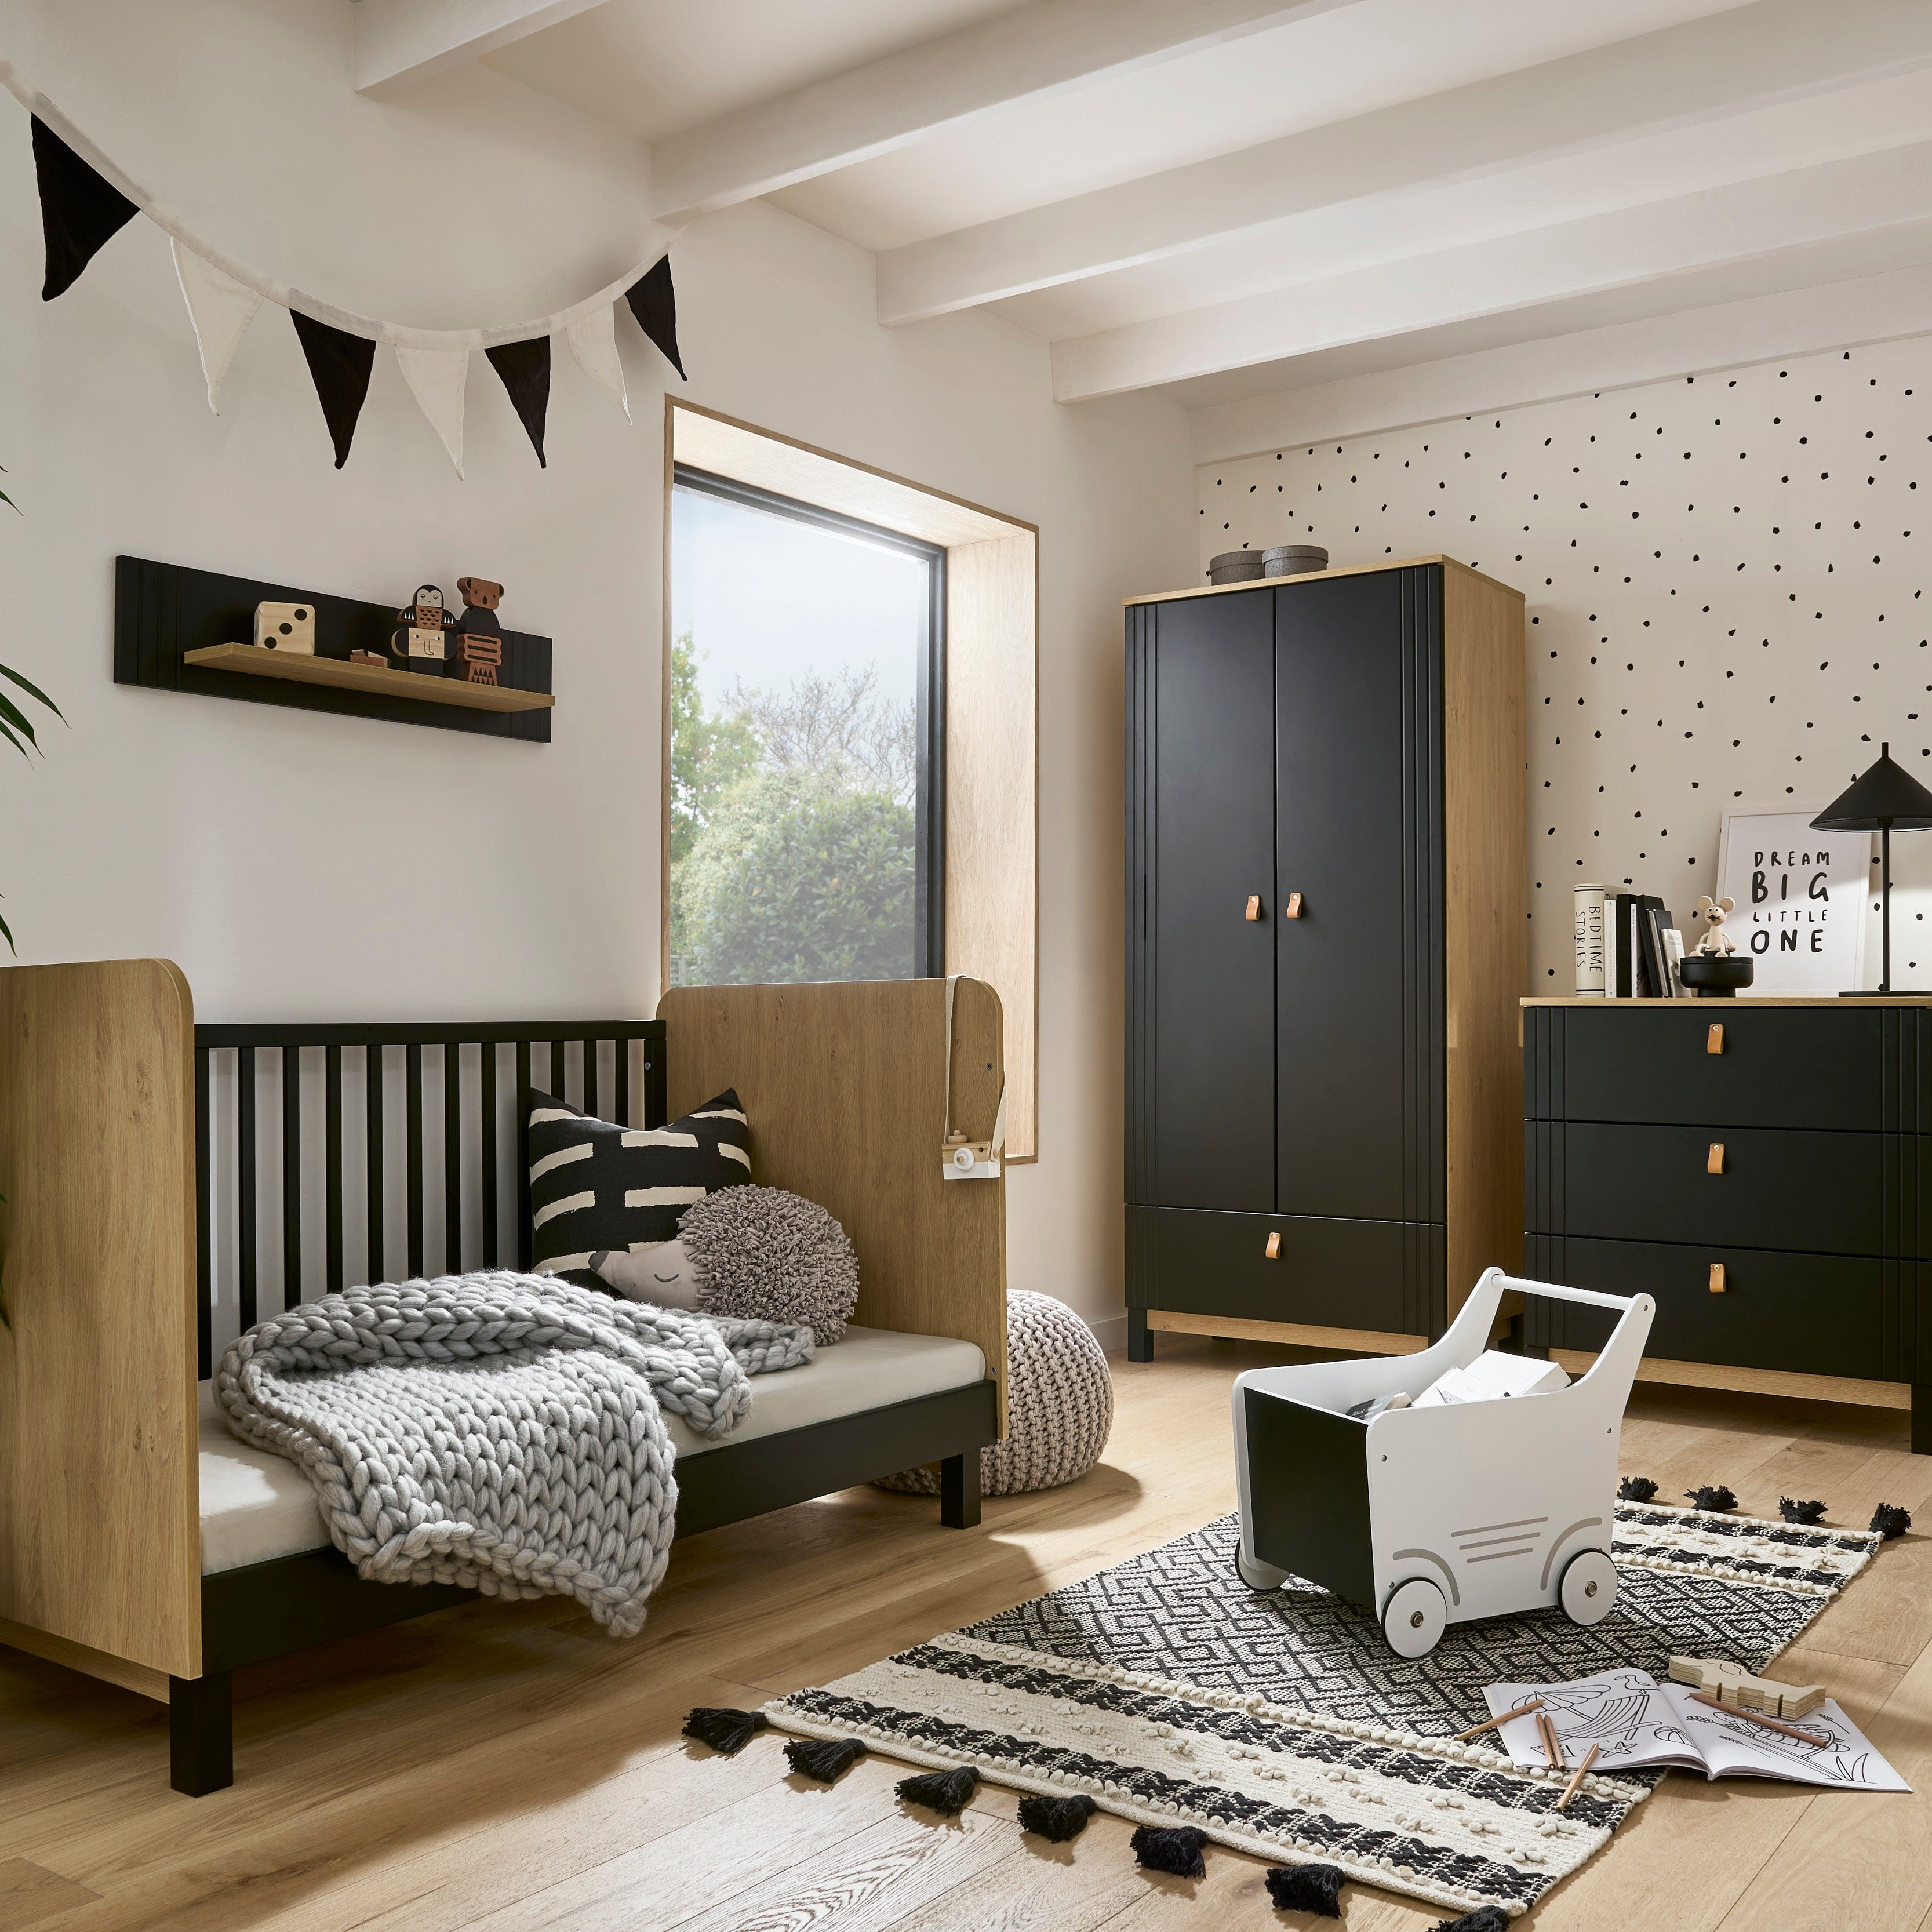 CuddleCo Rafi 5 Piece Room Set in Oak & Black Nursery Room Sets